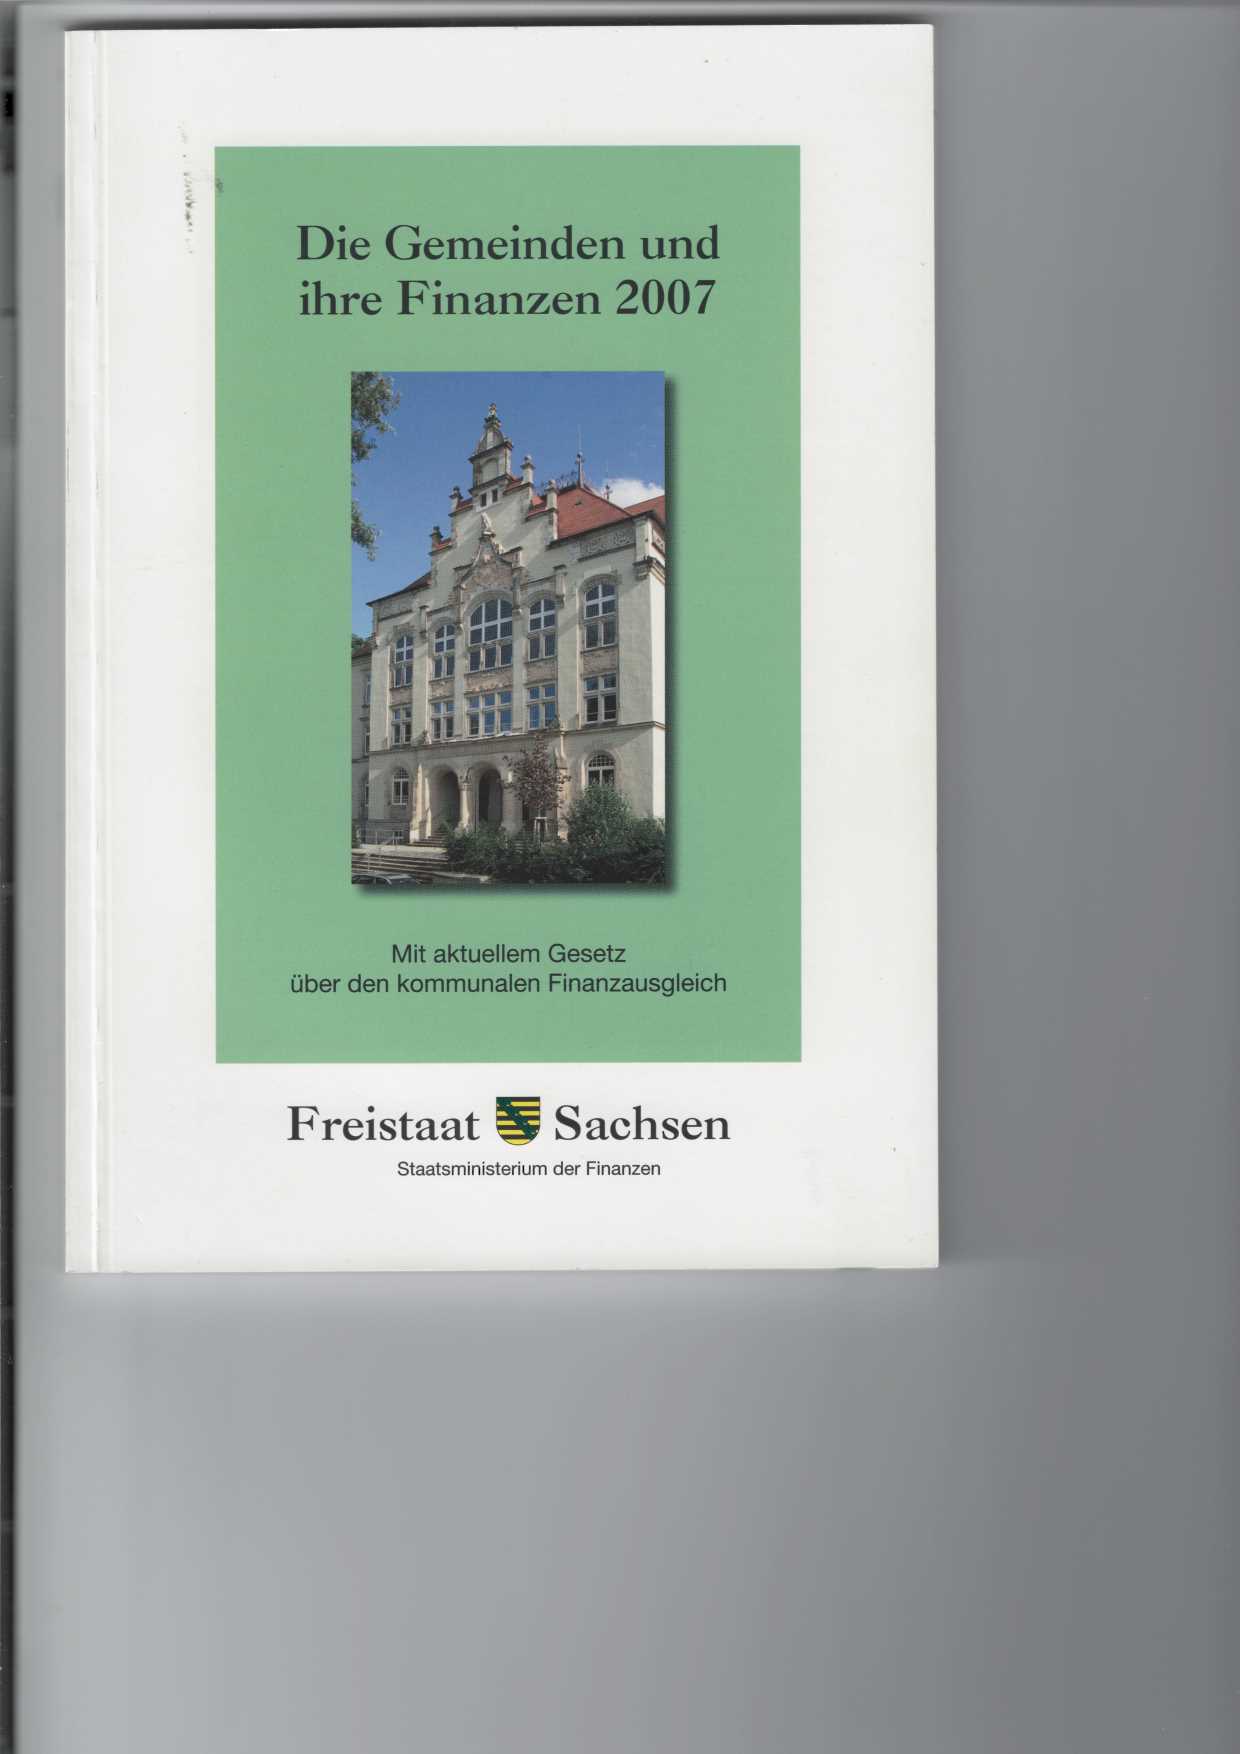 Die Gemeinden und ihre Finanzen 2007.